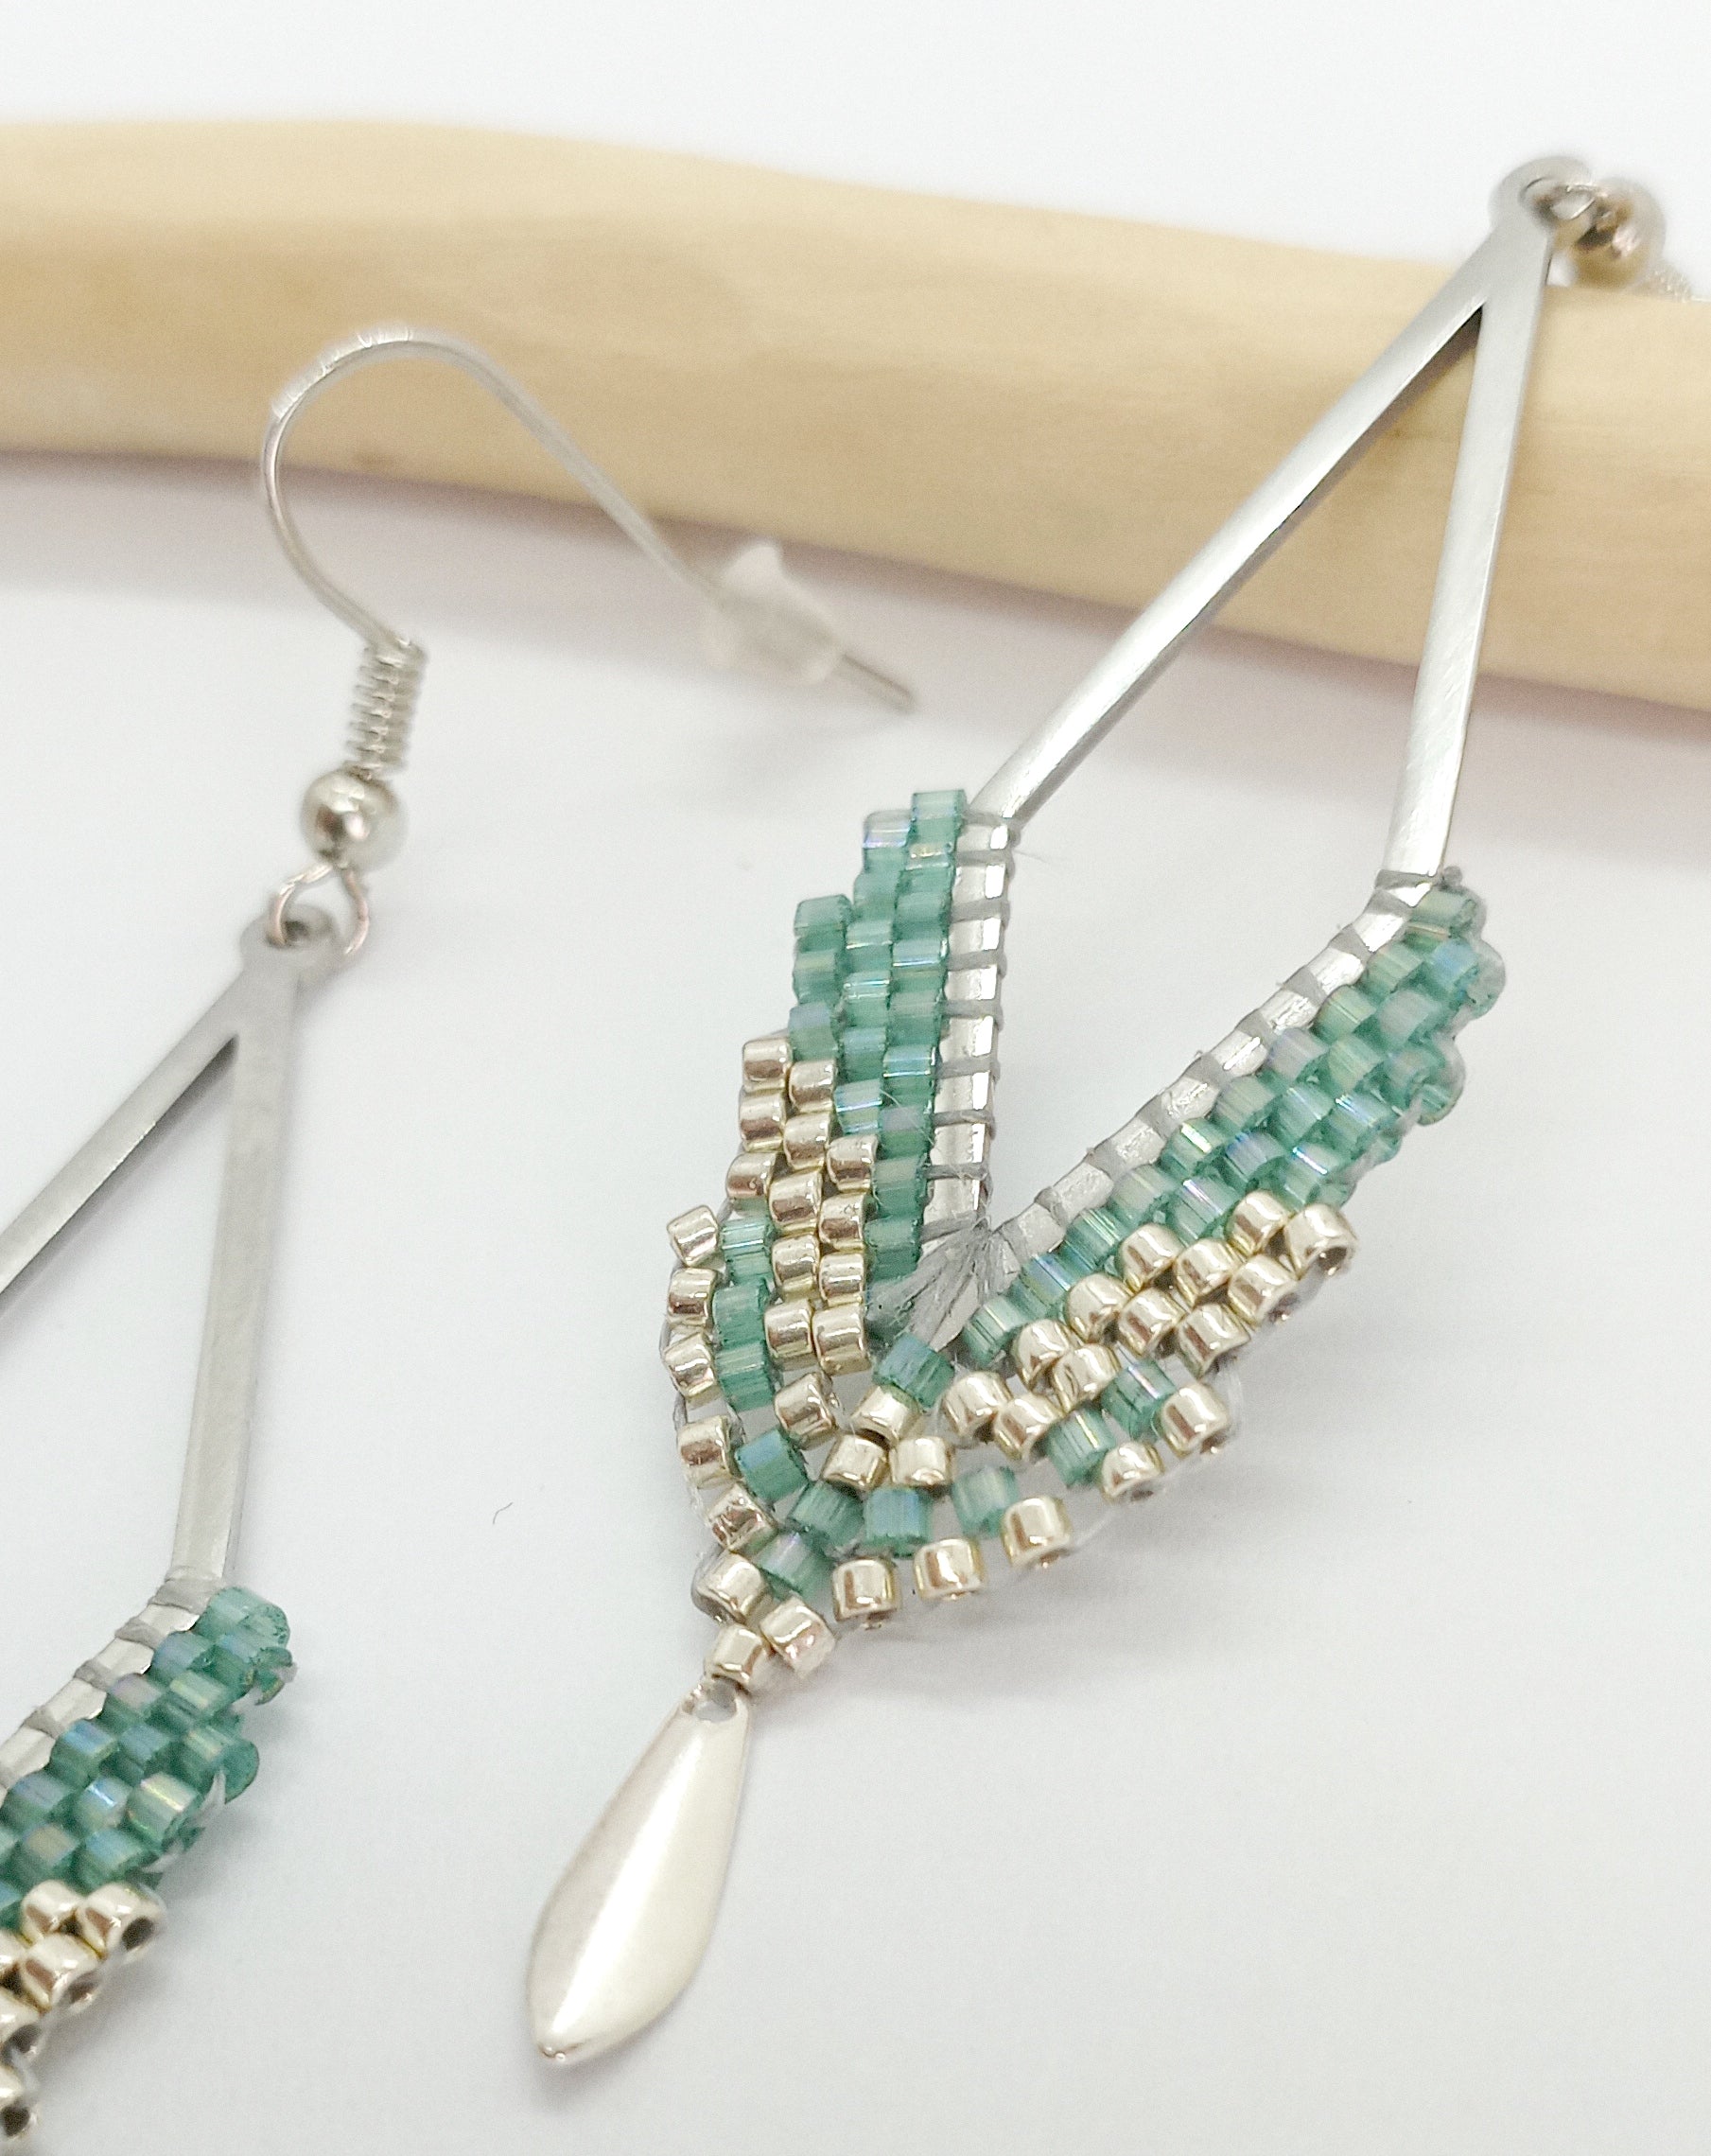 Boucles d'oreilles en acier argenté en forme de losange et perles miyuki tissées vert d'eau avec un sequin argenté. Posées sur fond blanc et bois clair